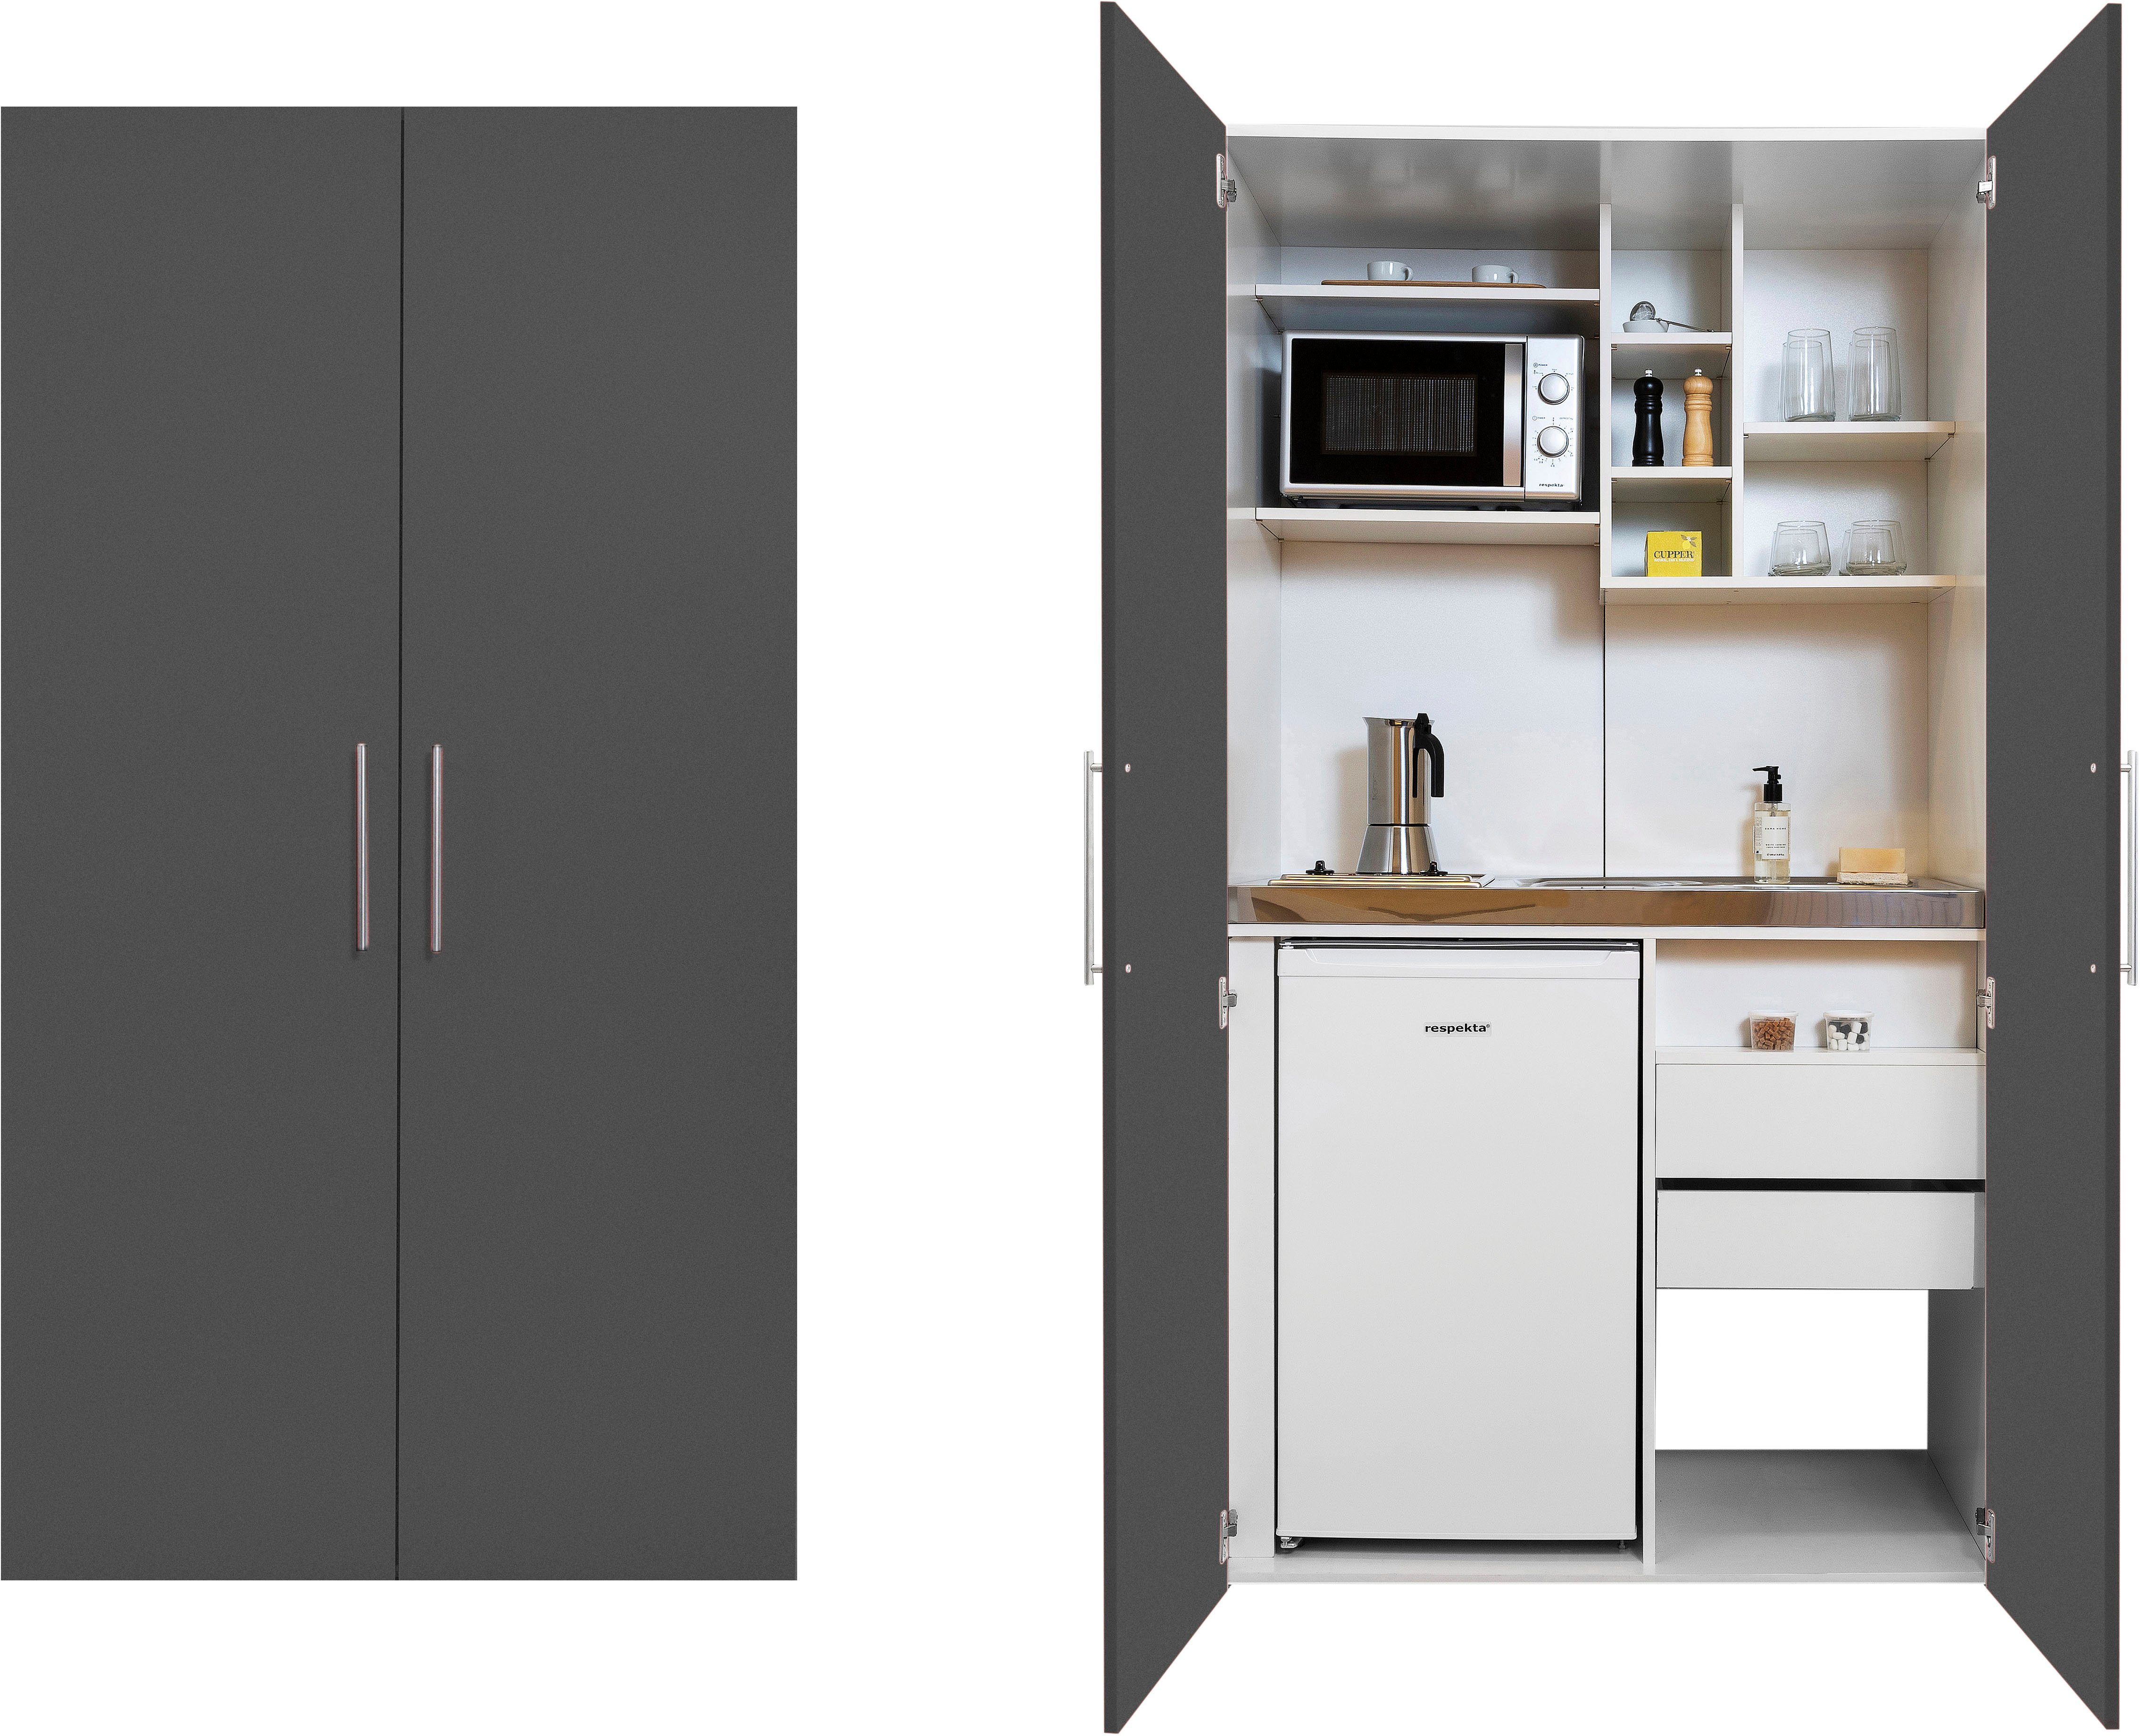 RESPEKTA Miniküche mit Glaskeramik-Kochfeld, Kühlschrank und Mikrowelle  online kaufen | OTTO